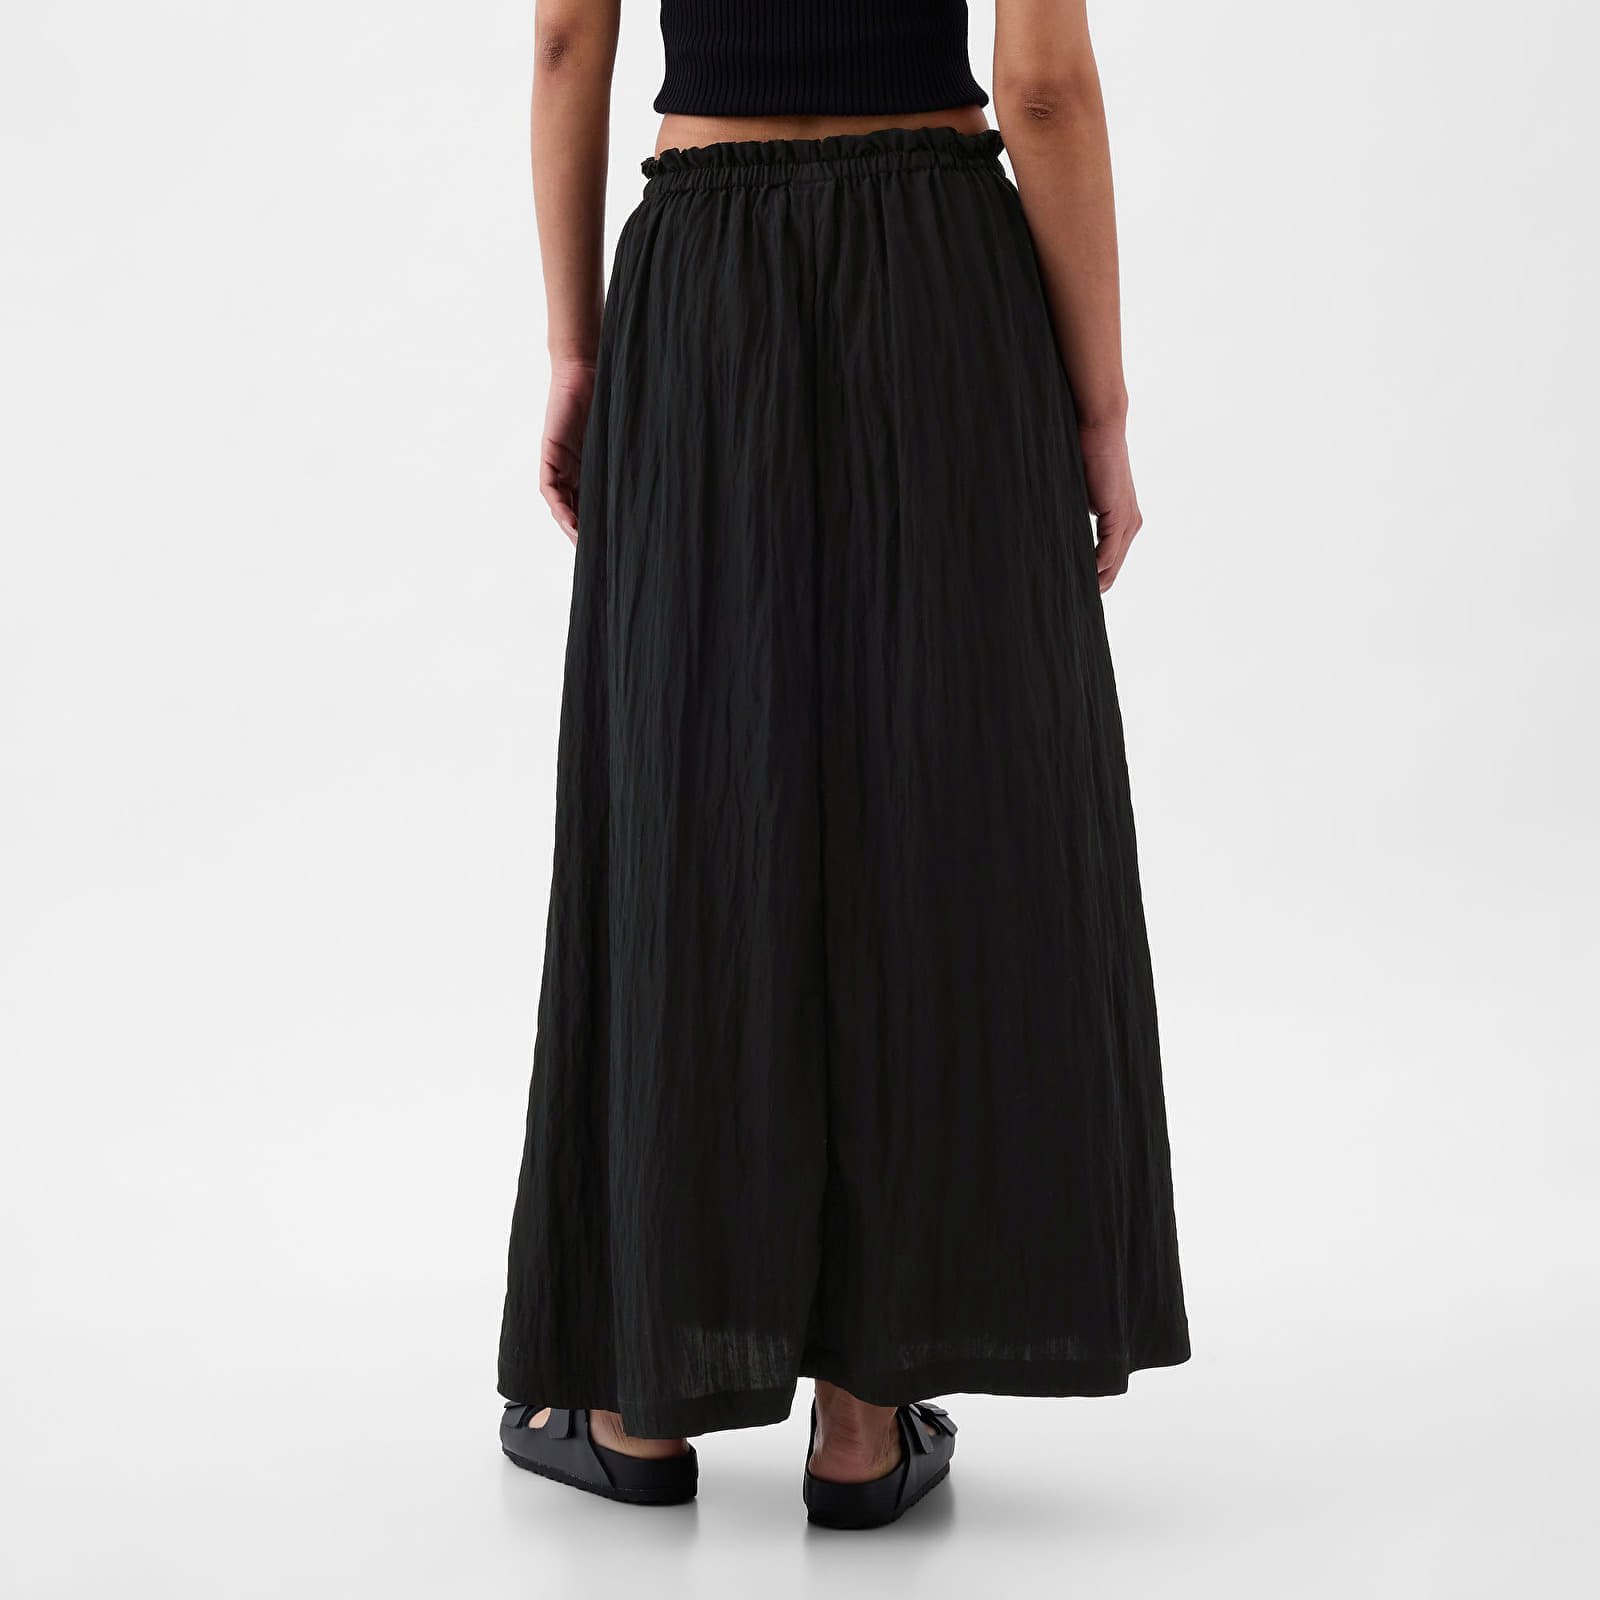 Skirt Paperbag Pull On Maxi Skirt Black